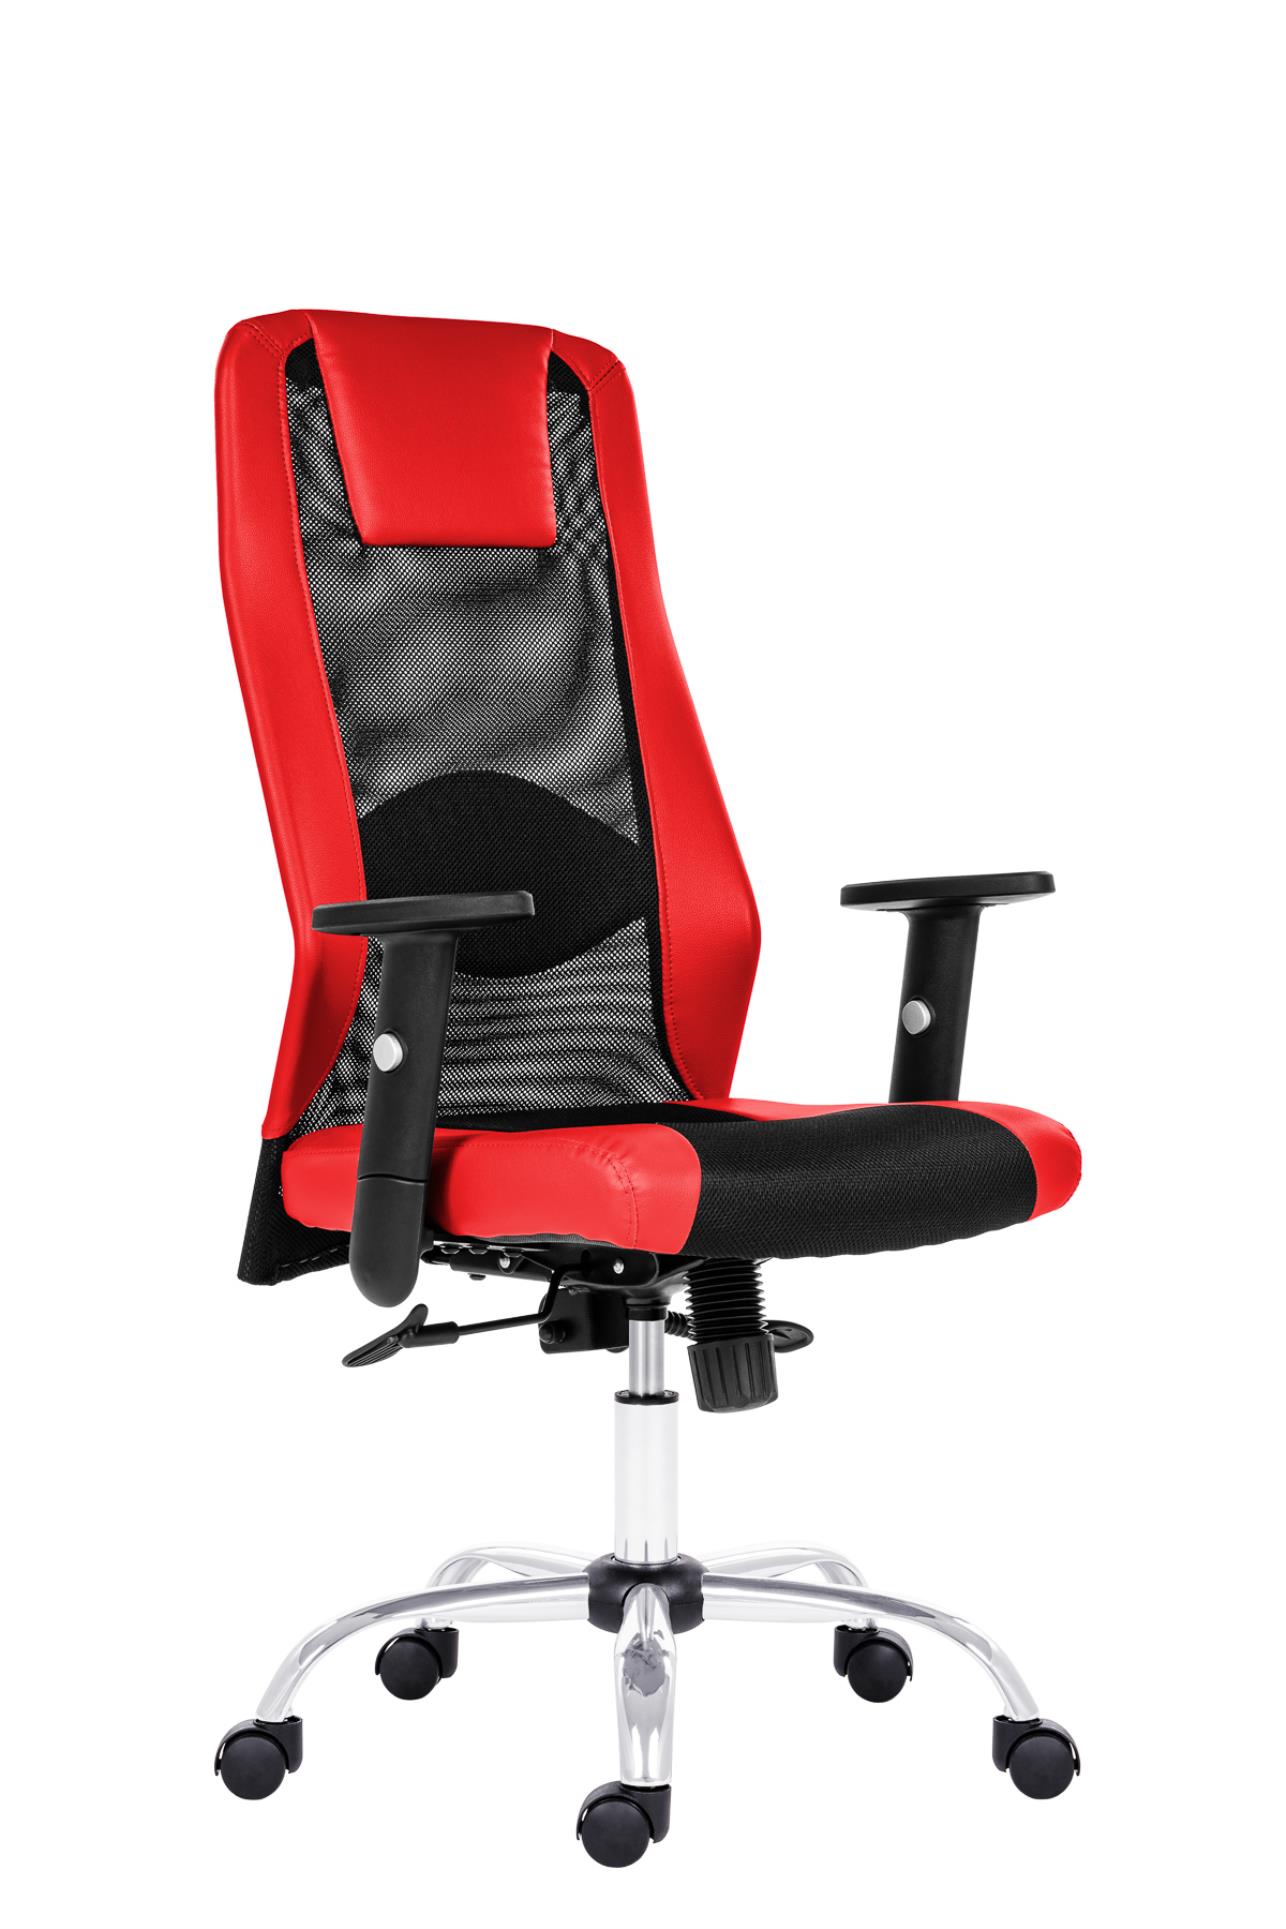 Antares Kancelářská židle Sander - synchro, černá/červená